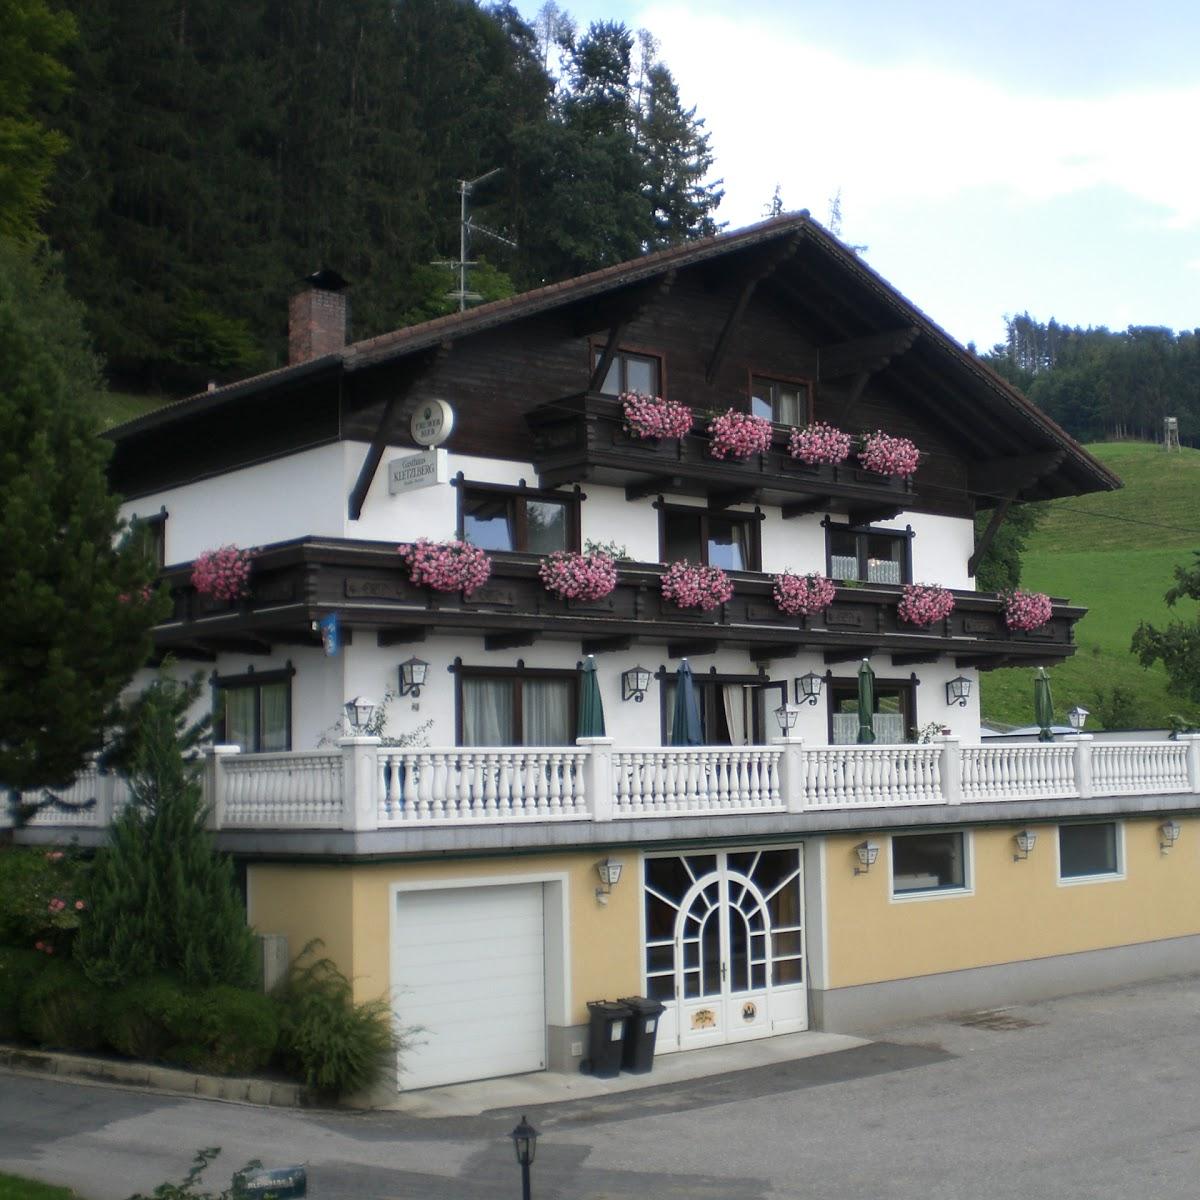 Restaurant "Gasthaus Kletzlberg" in Kleinberg